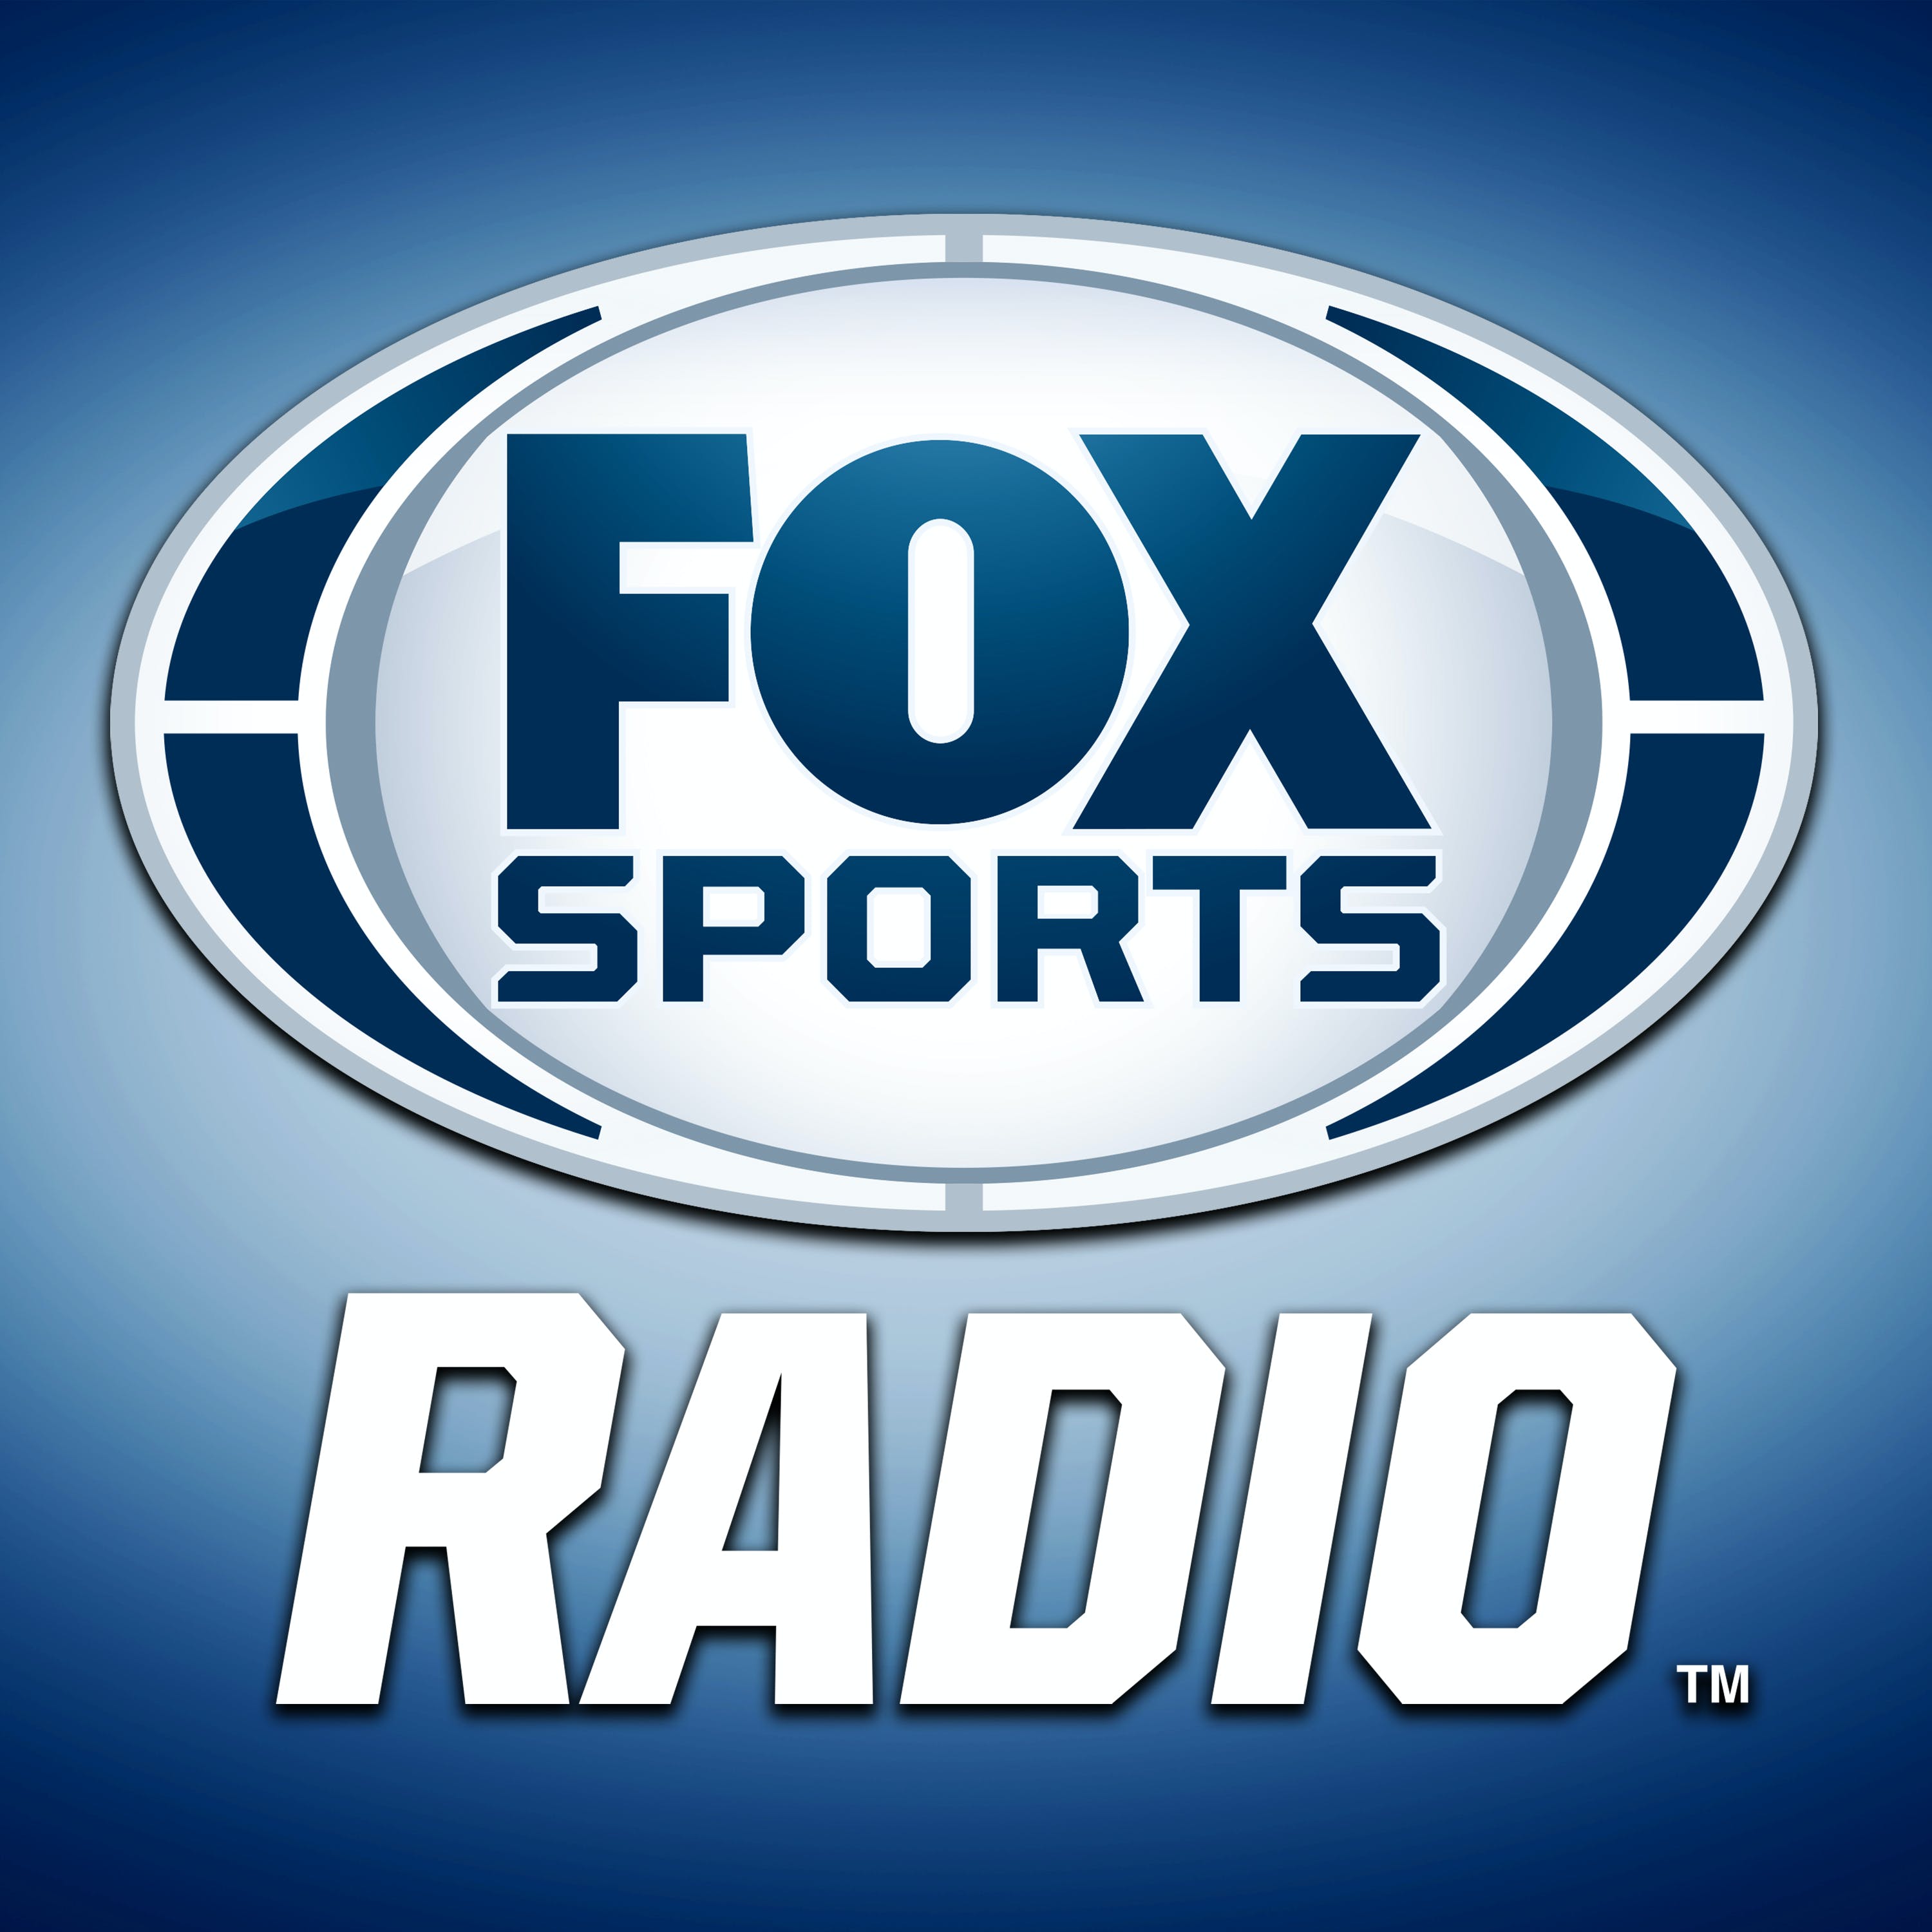 06/19/2021 - FOX Sports Saturday with Steve Hartman and Geoff Schwartz